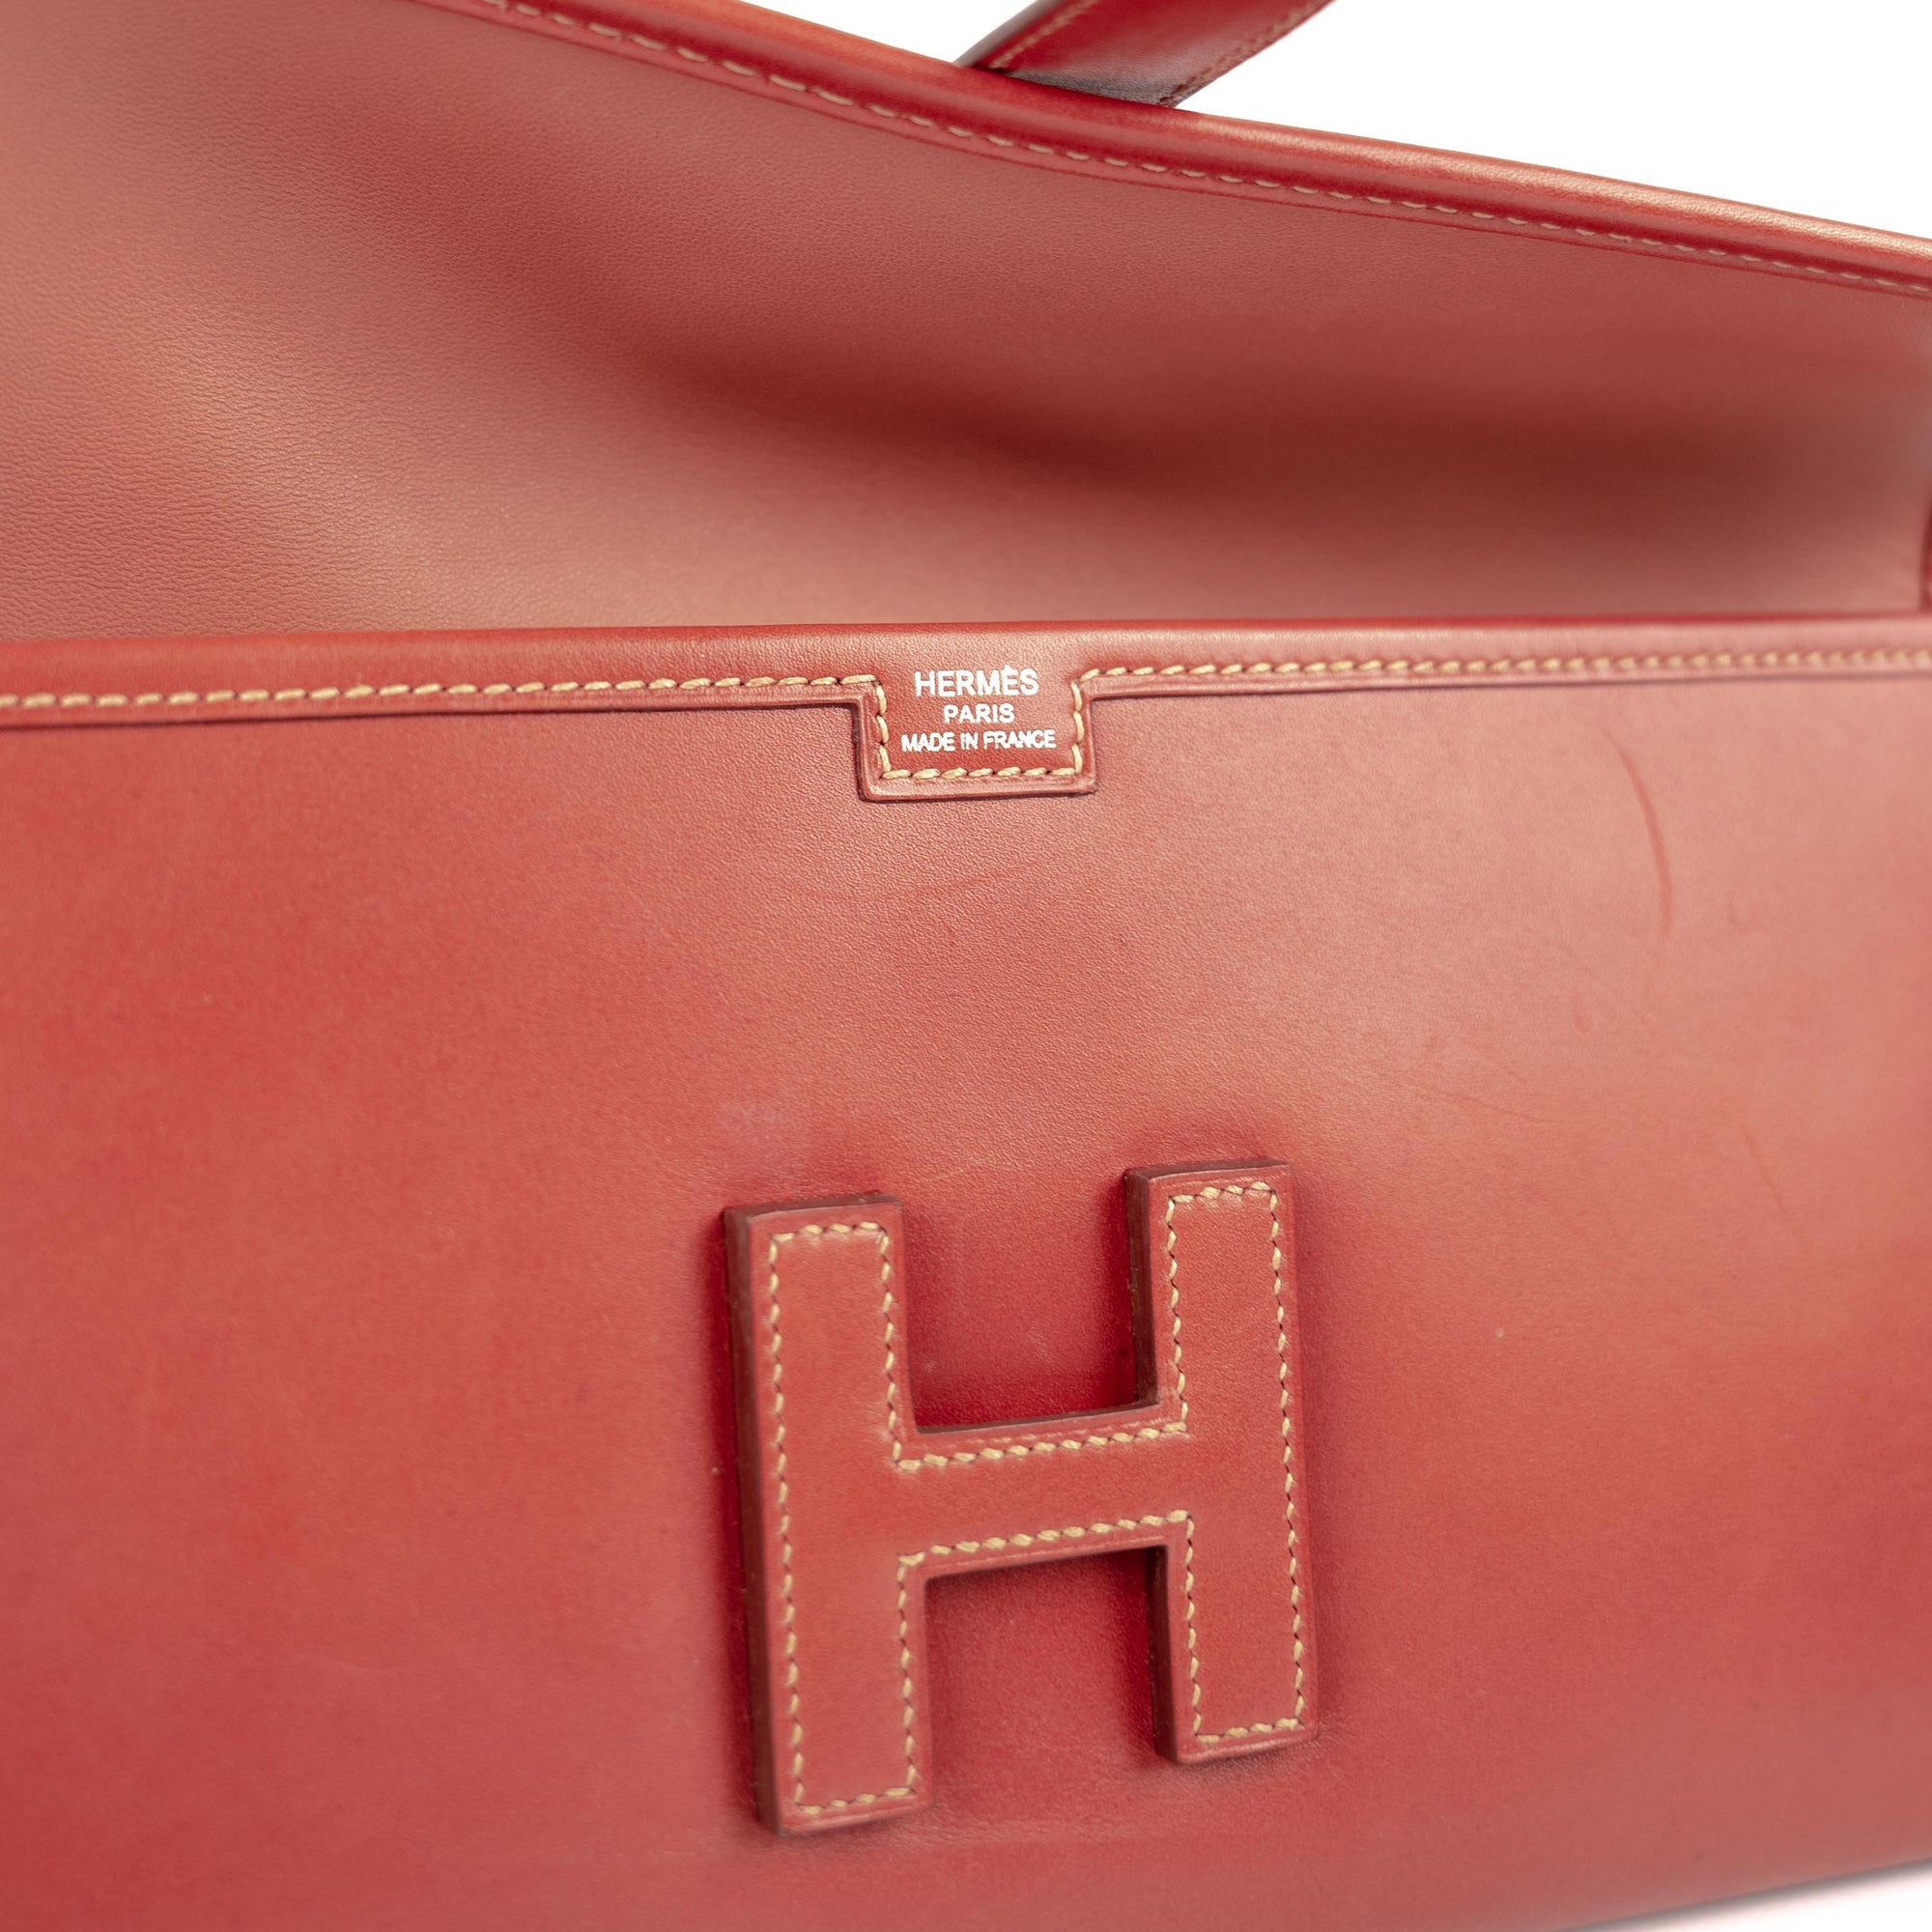 1 Heavy Bag, Hermès Jige Clutch 397156